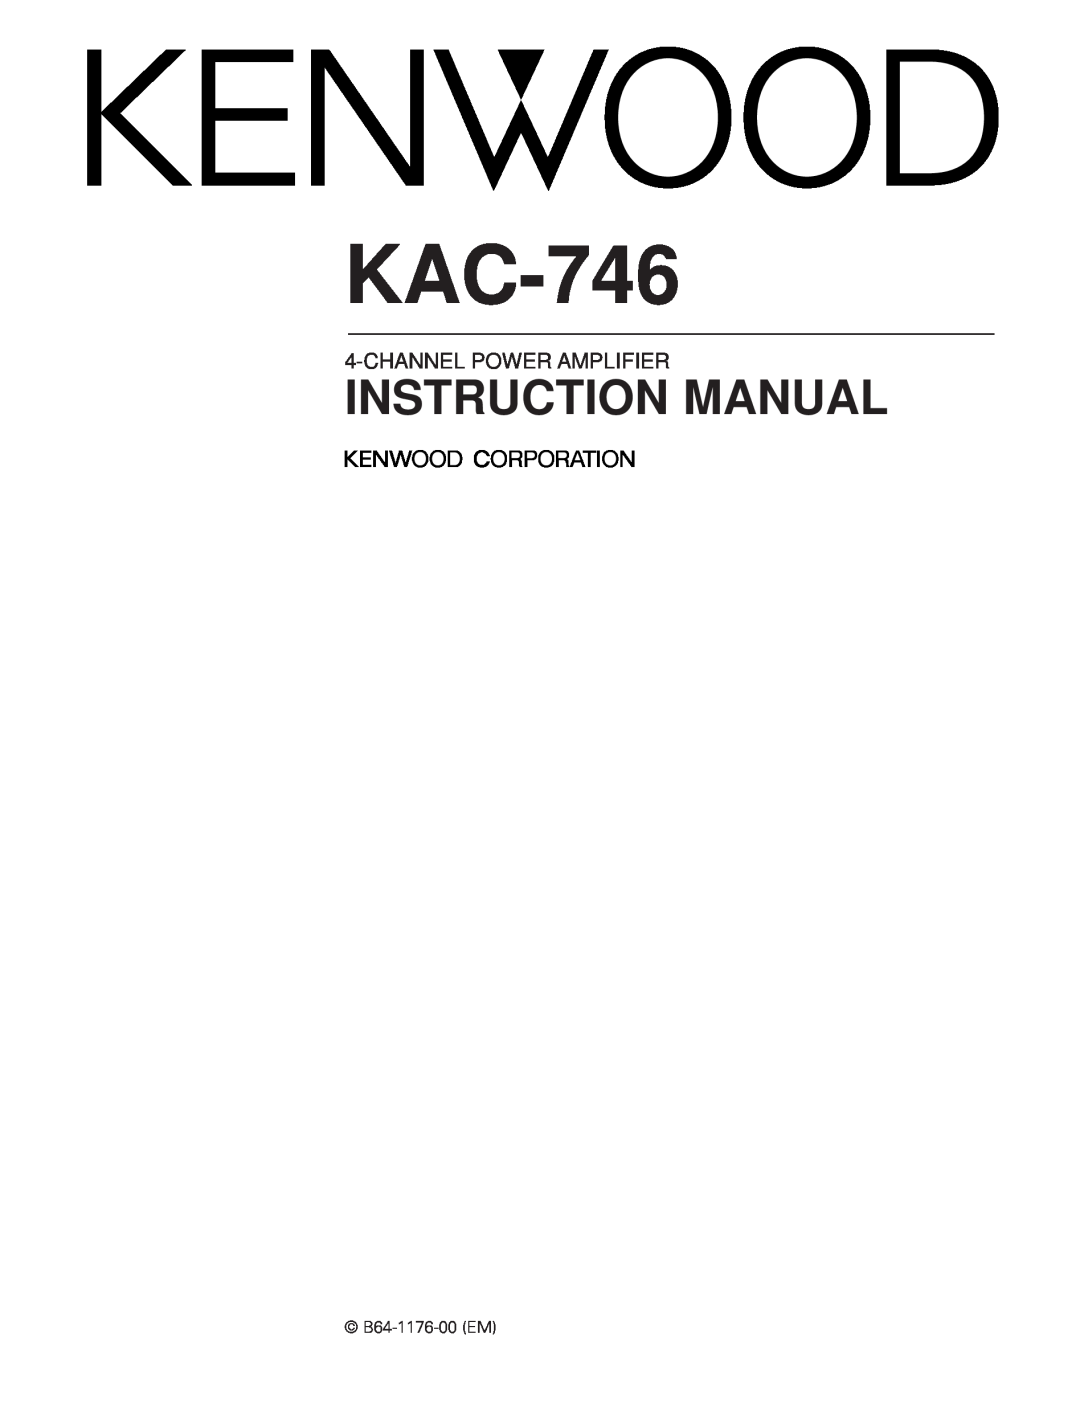 Kenwood KAC-746 instruction manual Channelpower Amplifier, B64-1176-00EM 